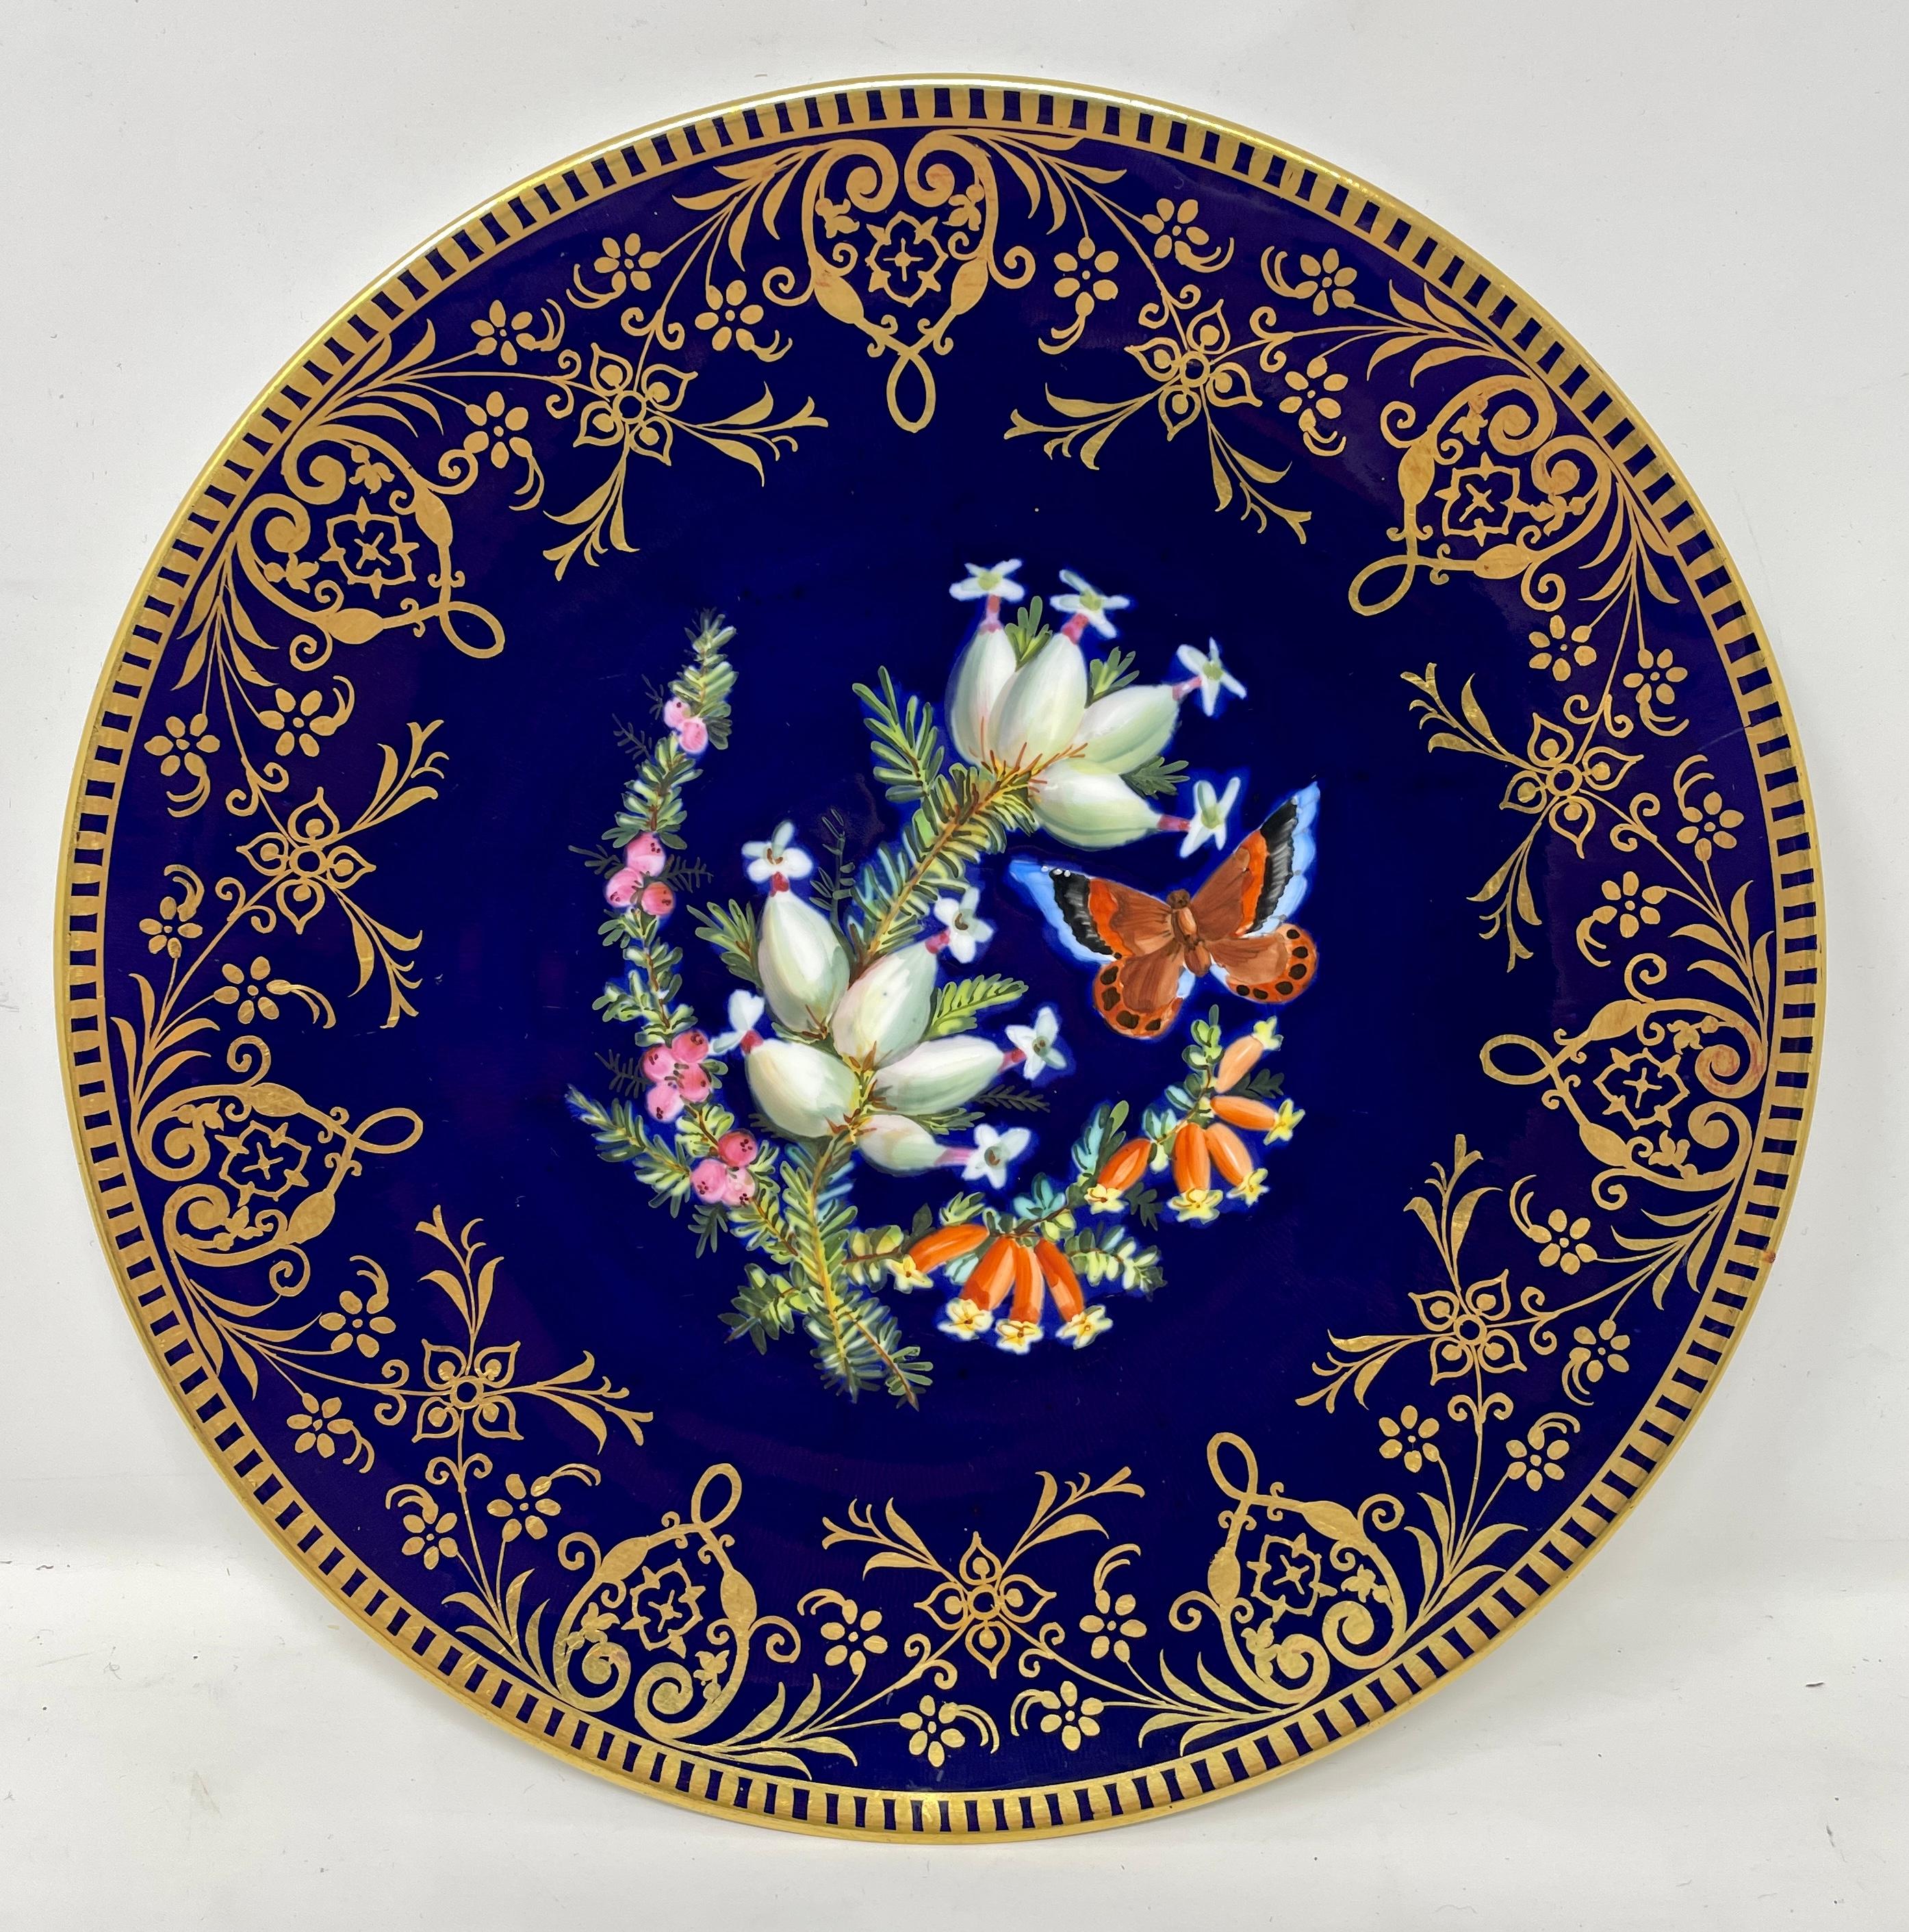 Ensemble de 10 assiettes à dessert anglaises anciennes peintes à la main en cobalt et or, vers 1870-1880. 